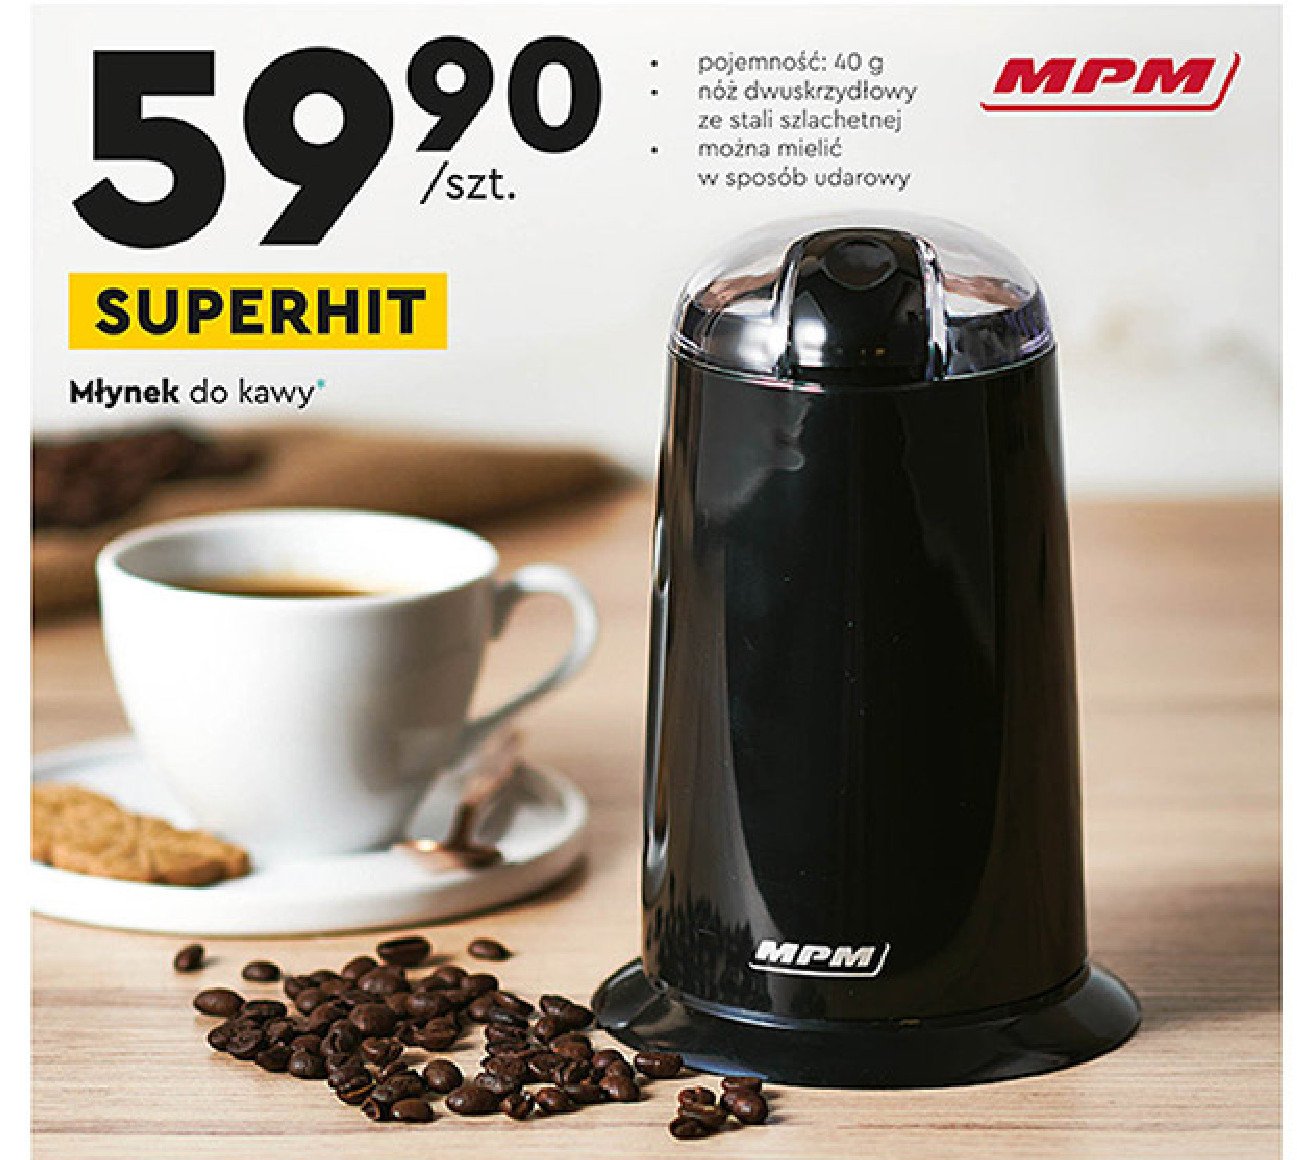 Młynek do kawy mmk 07 czarny Mpm product promocja